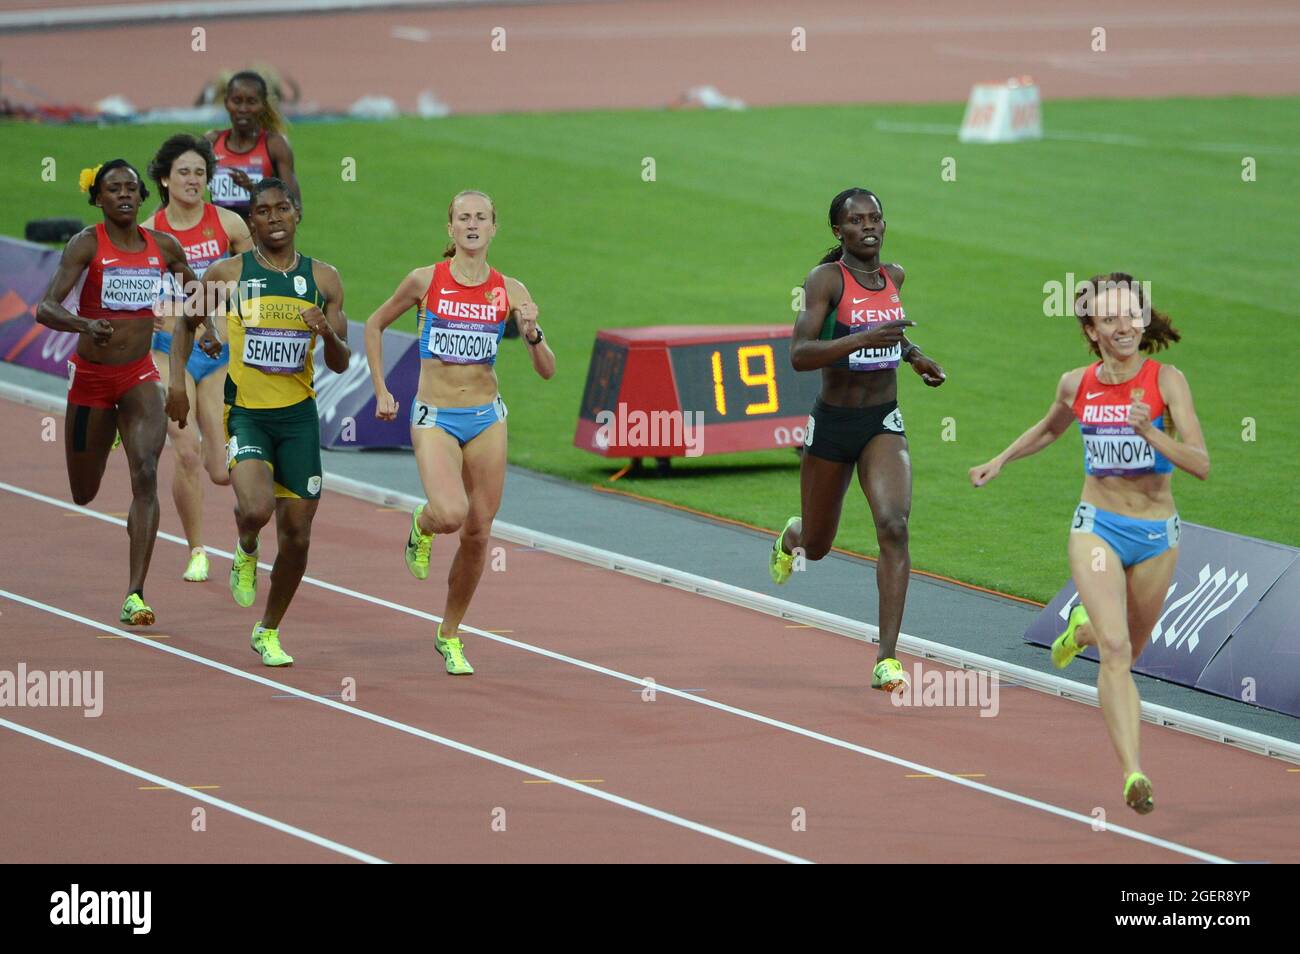 Mariya Savinova (plus tard disqualifiée) remporte le 800m féminin lors de la dernière nuit d'Athlétisme au stade olympique, 11 août 2012 Banque D'Images